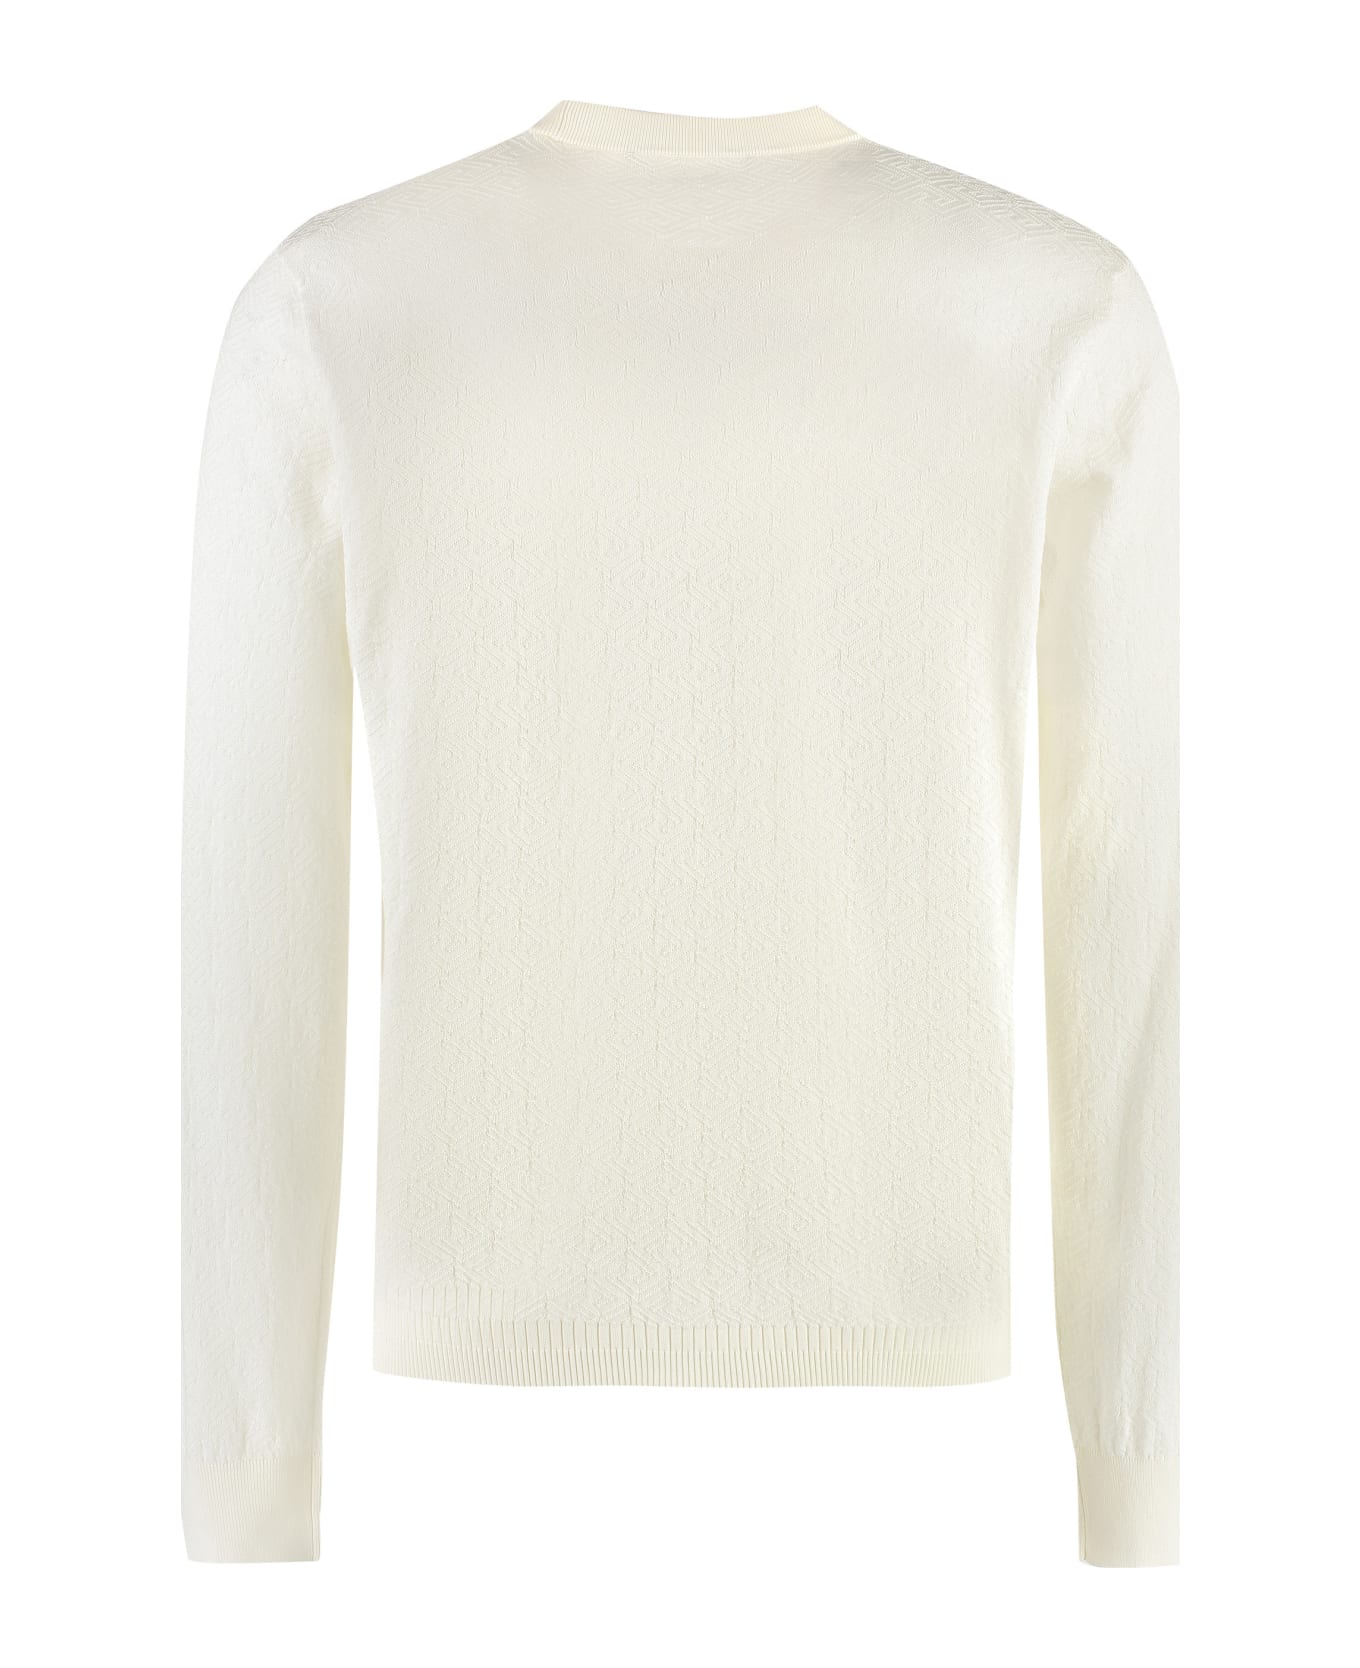 Versace Long Sleeve Cotton Blend T-shirt - Ivory